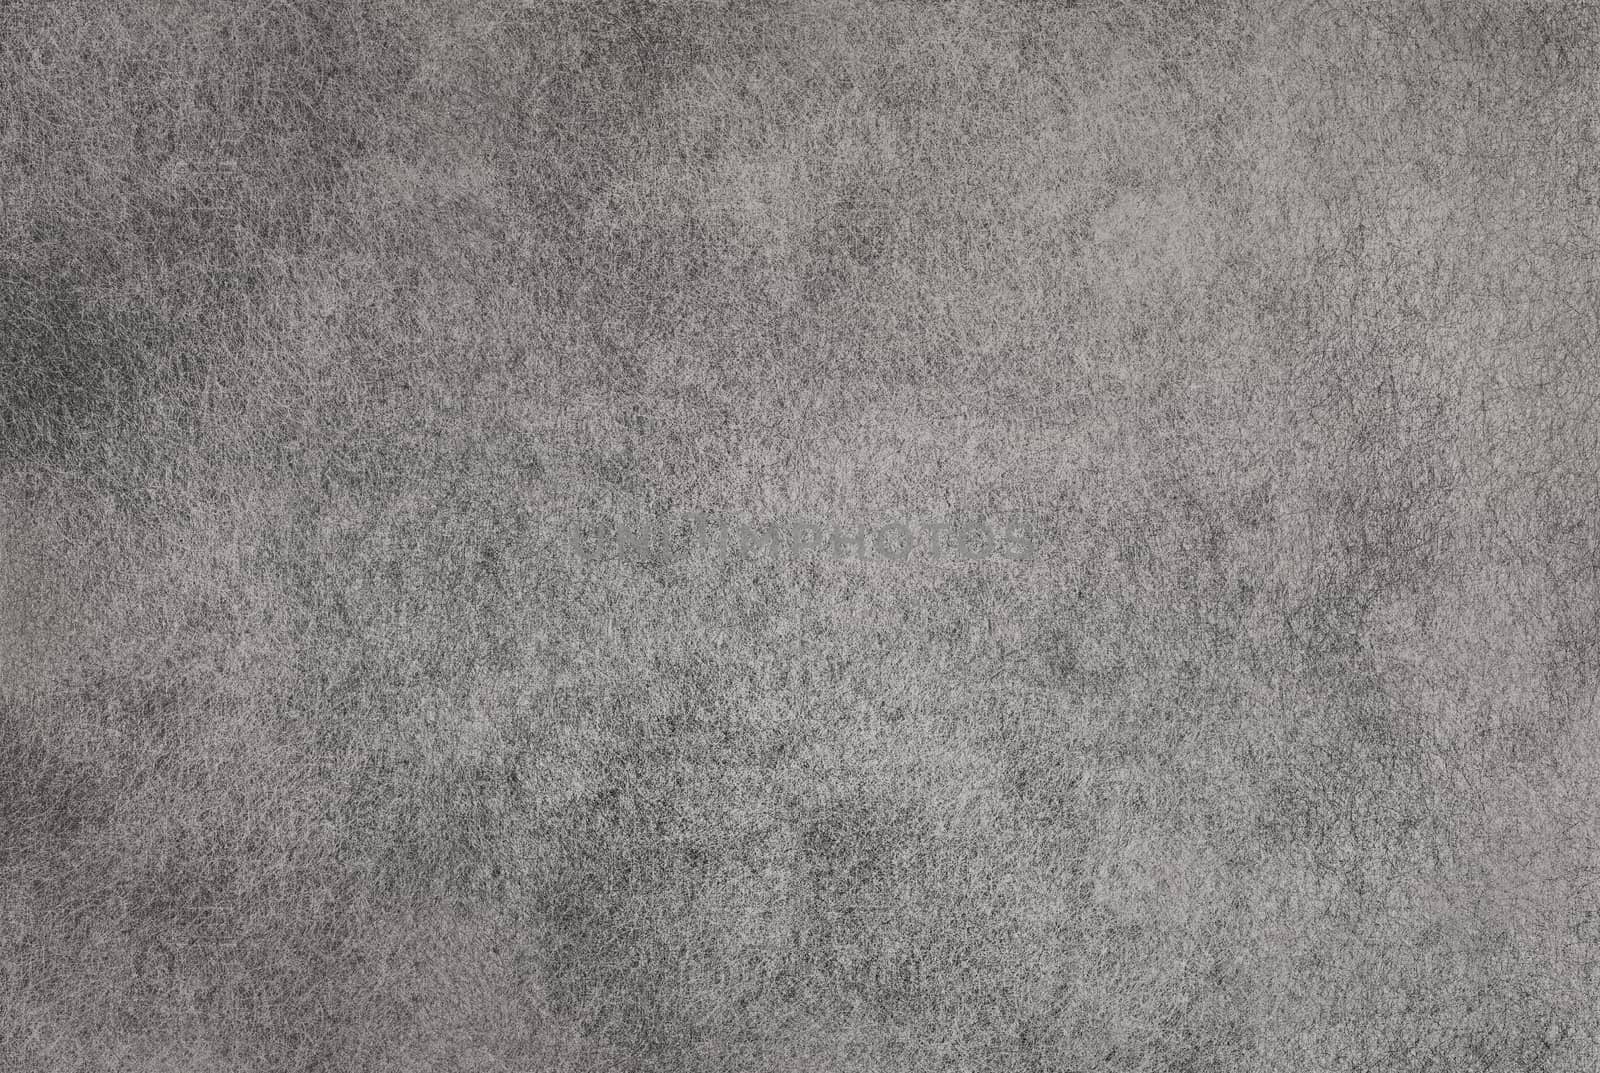 Grunge gray background by Vectorex